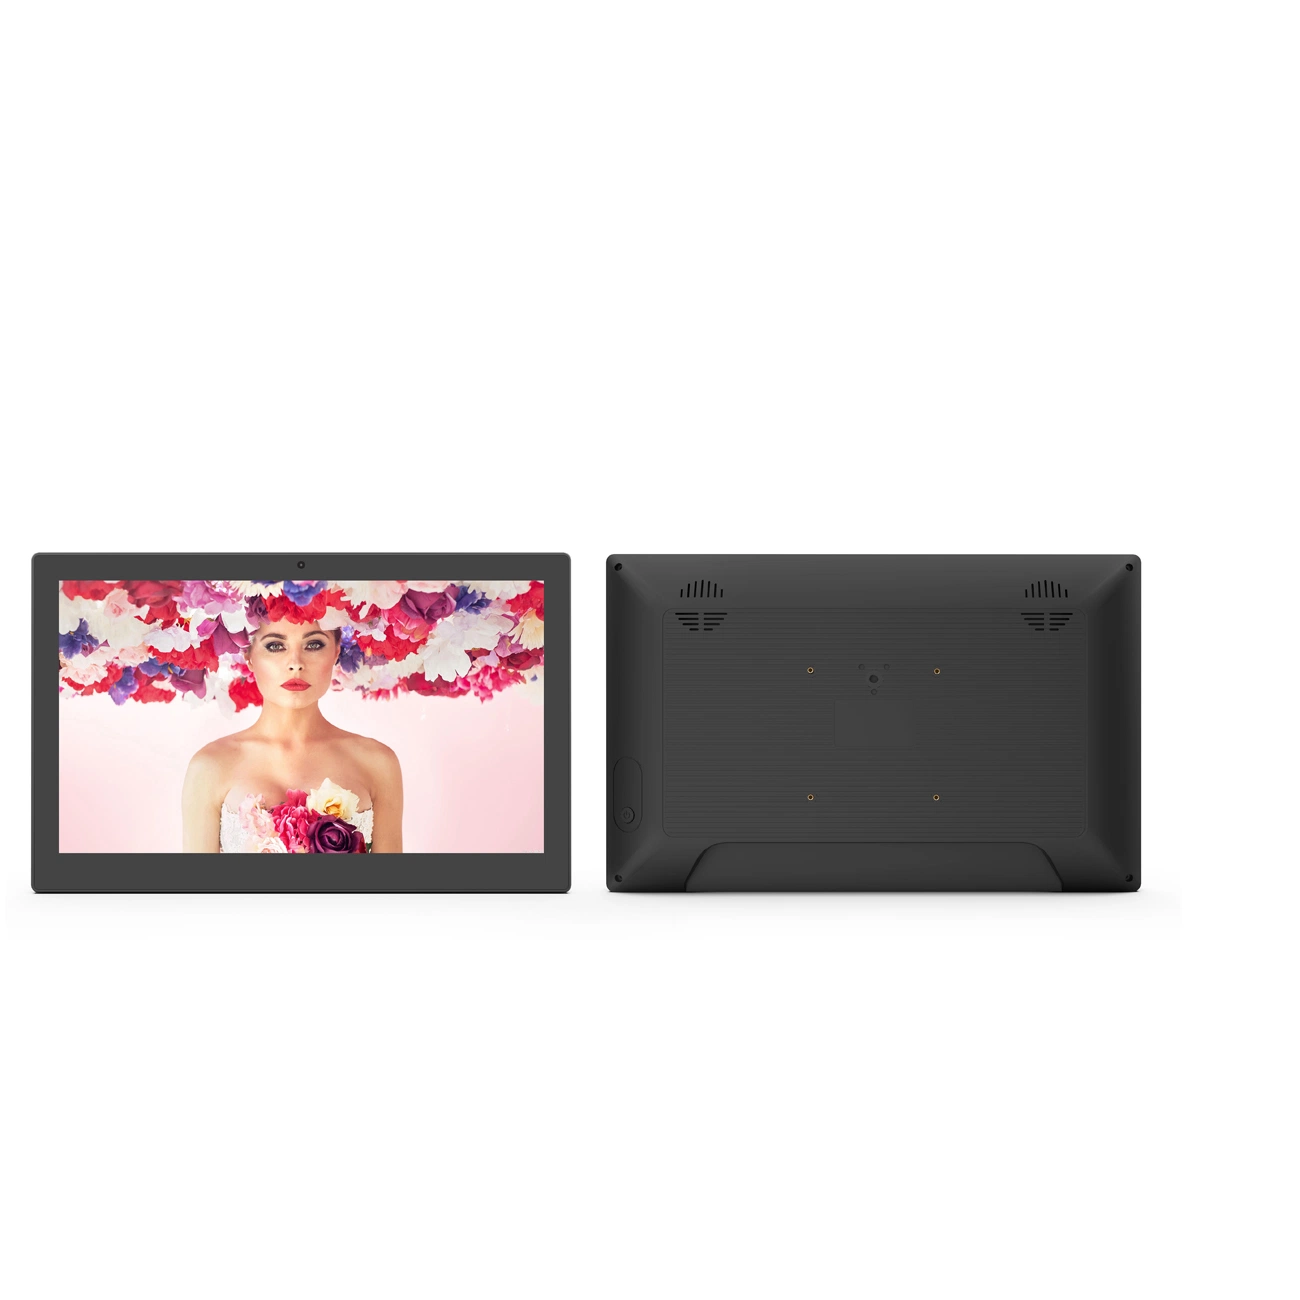 Großhandel 13,3/15,6 Zoll Wand montiert kapazitive Touchscreen WiFi RJ45 LCD-Panel USB SD-Karte für den Innenbereich NFC Digital Signage Commercial LCD-Touchscreen